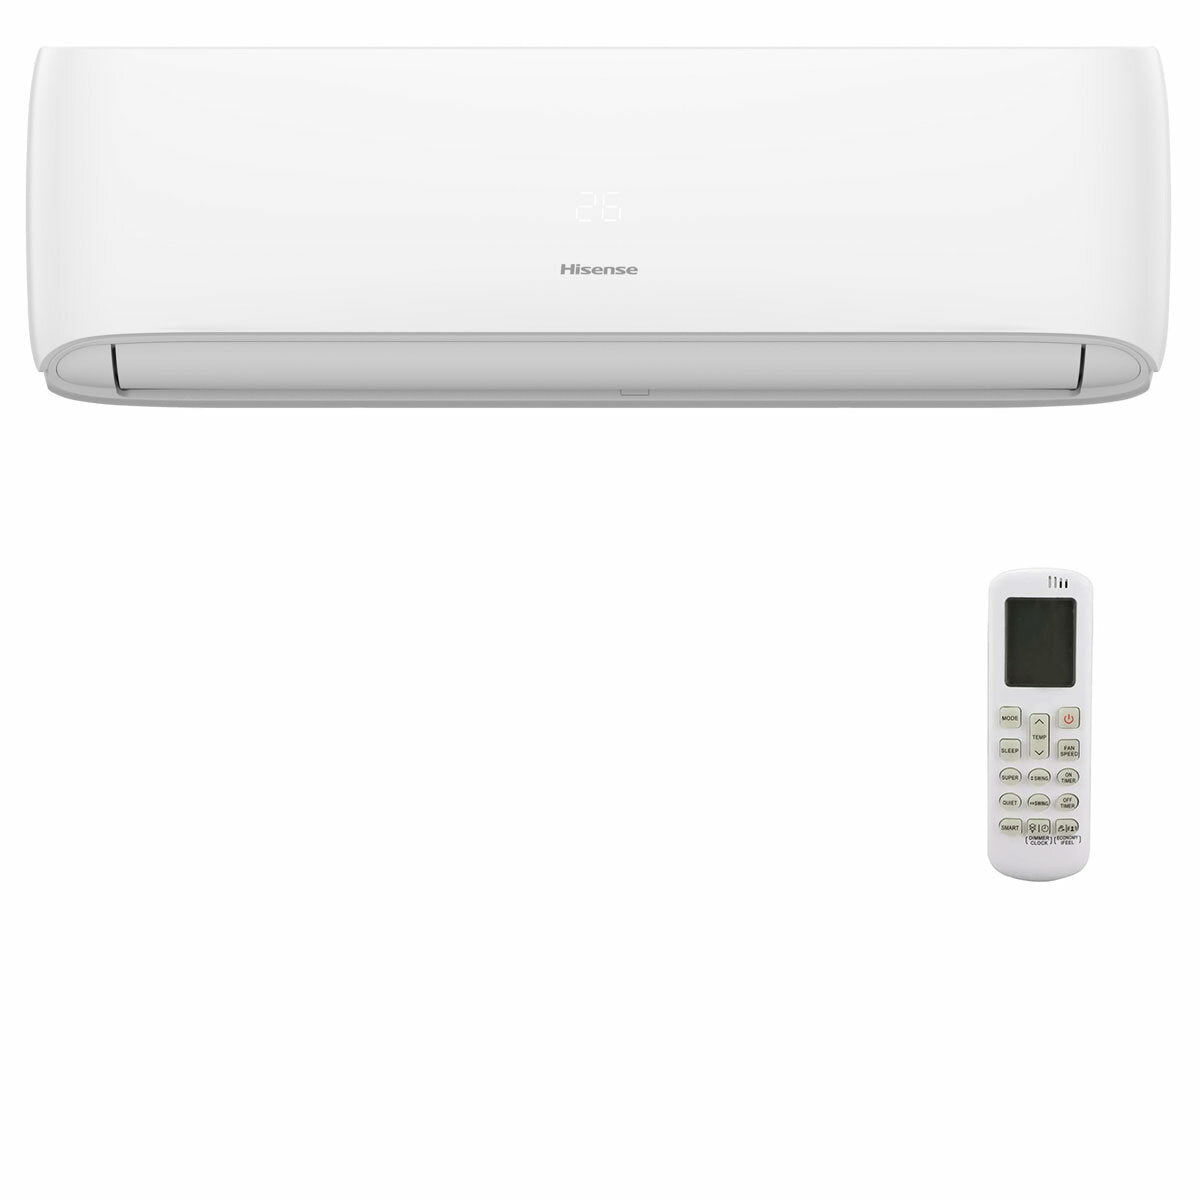 Hisense Hi-Comfort quadri split air conditioner 7000 + 12000 + 12000 + 24000 BTU wifi inverter outdoor unit 12.5 kW